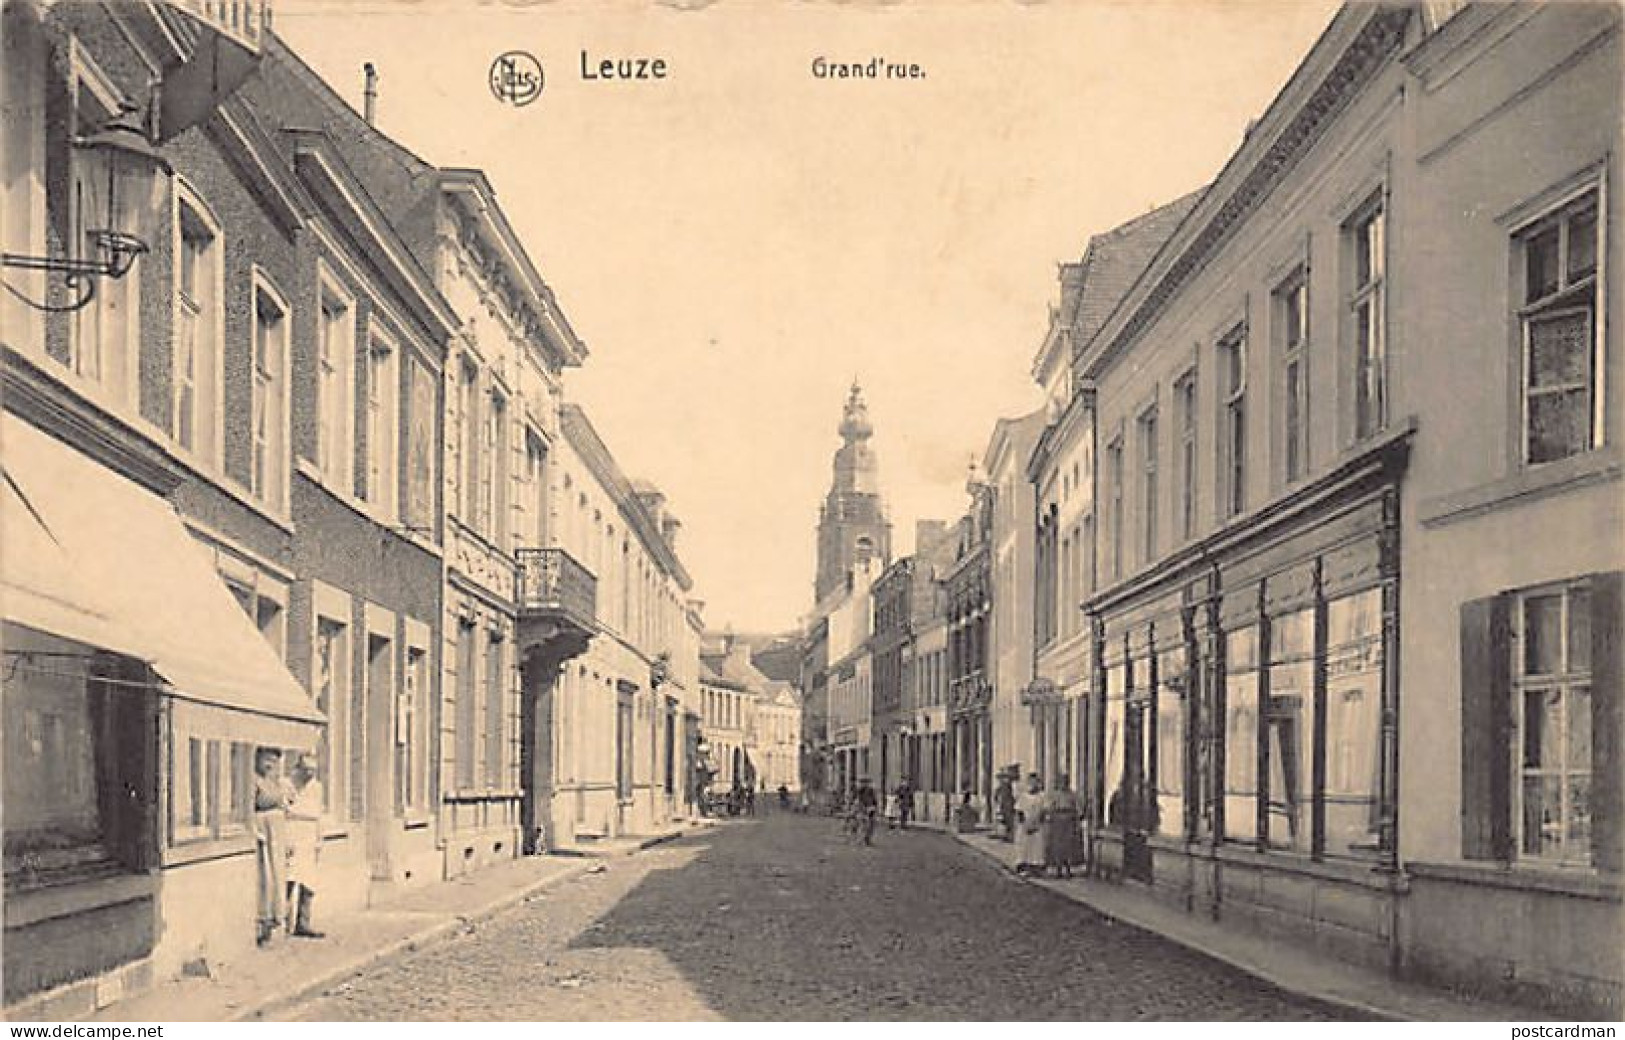 LEUZE (Hainaut) Grand'rue - Leuze-en-Hainaut